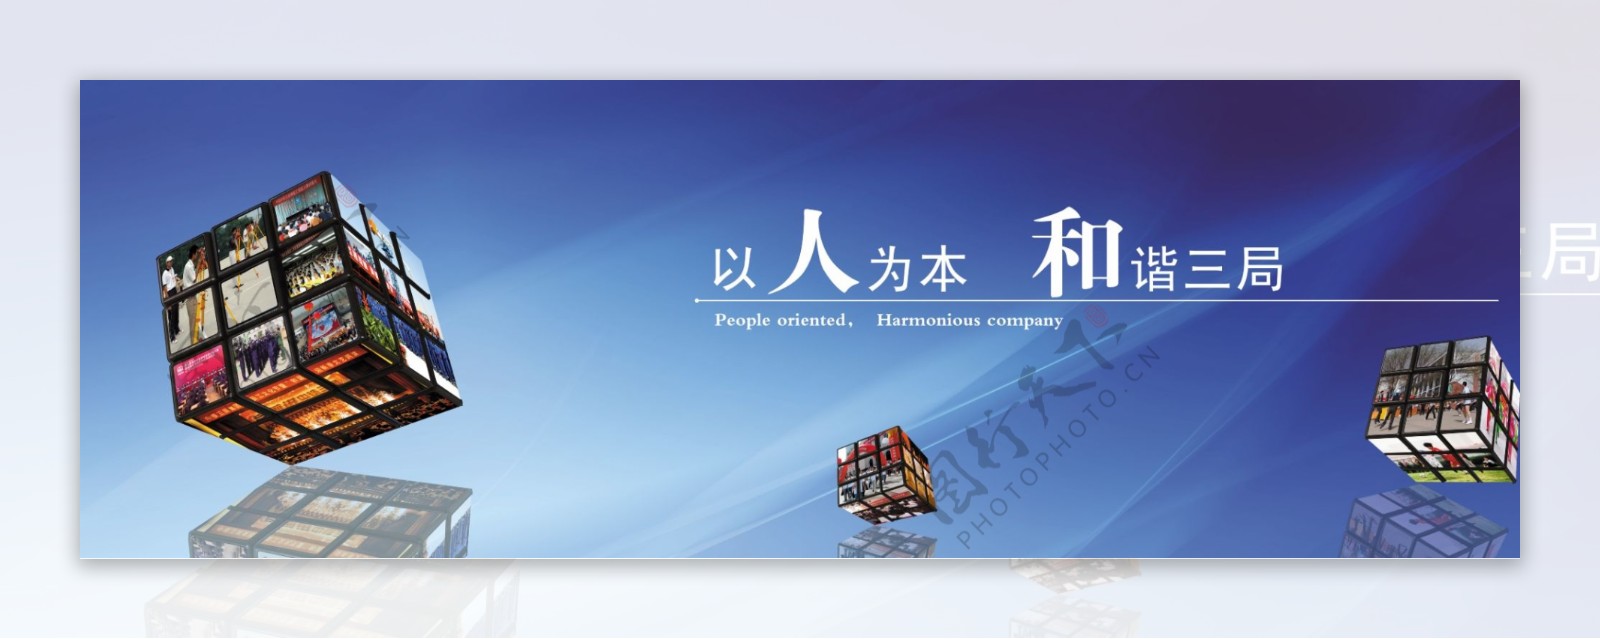 中铁三局宣传版面图片